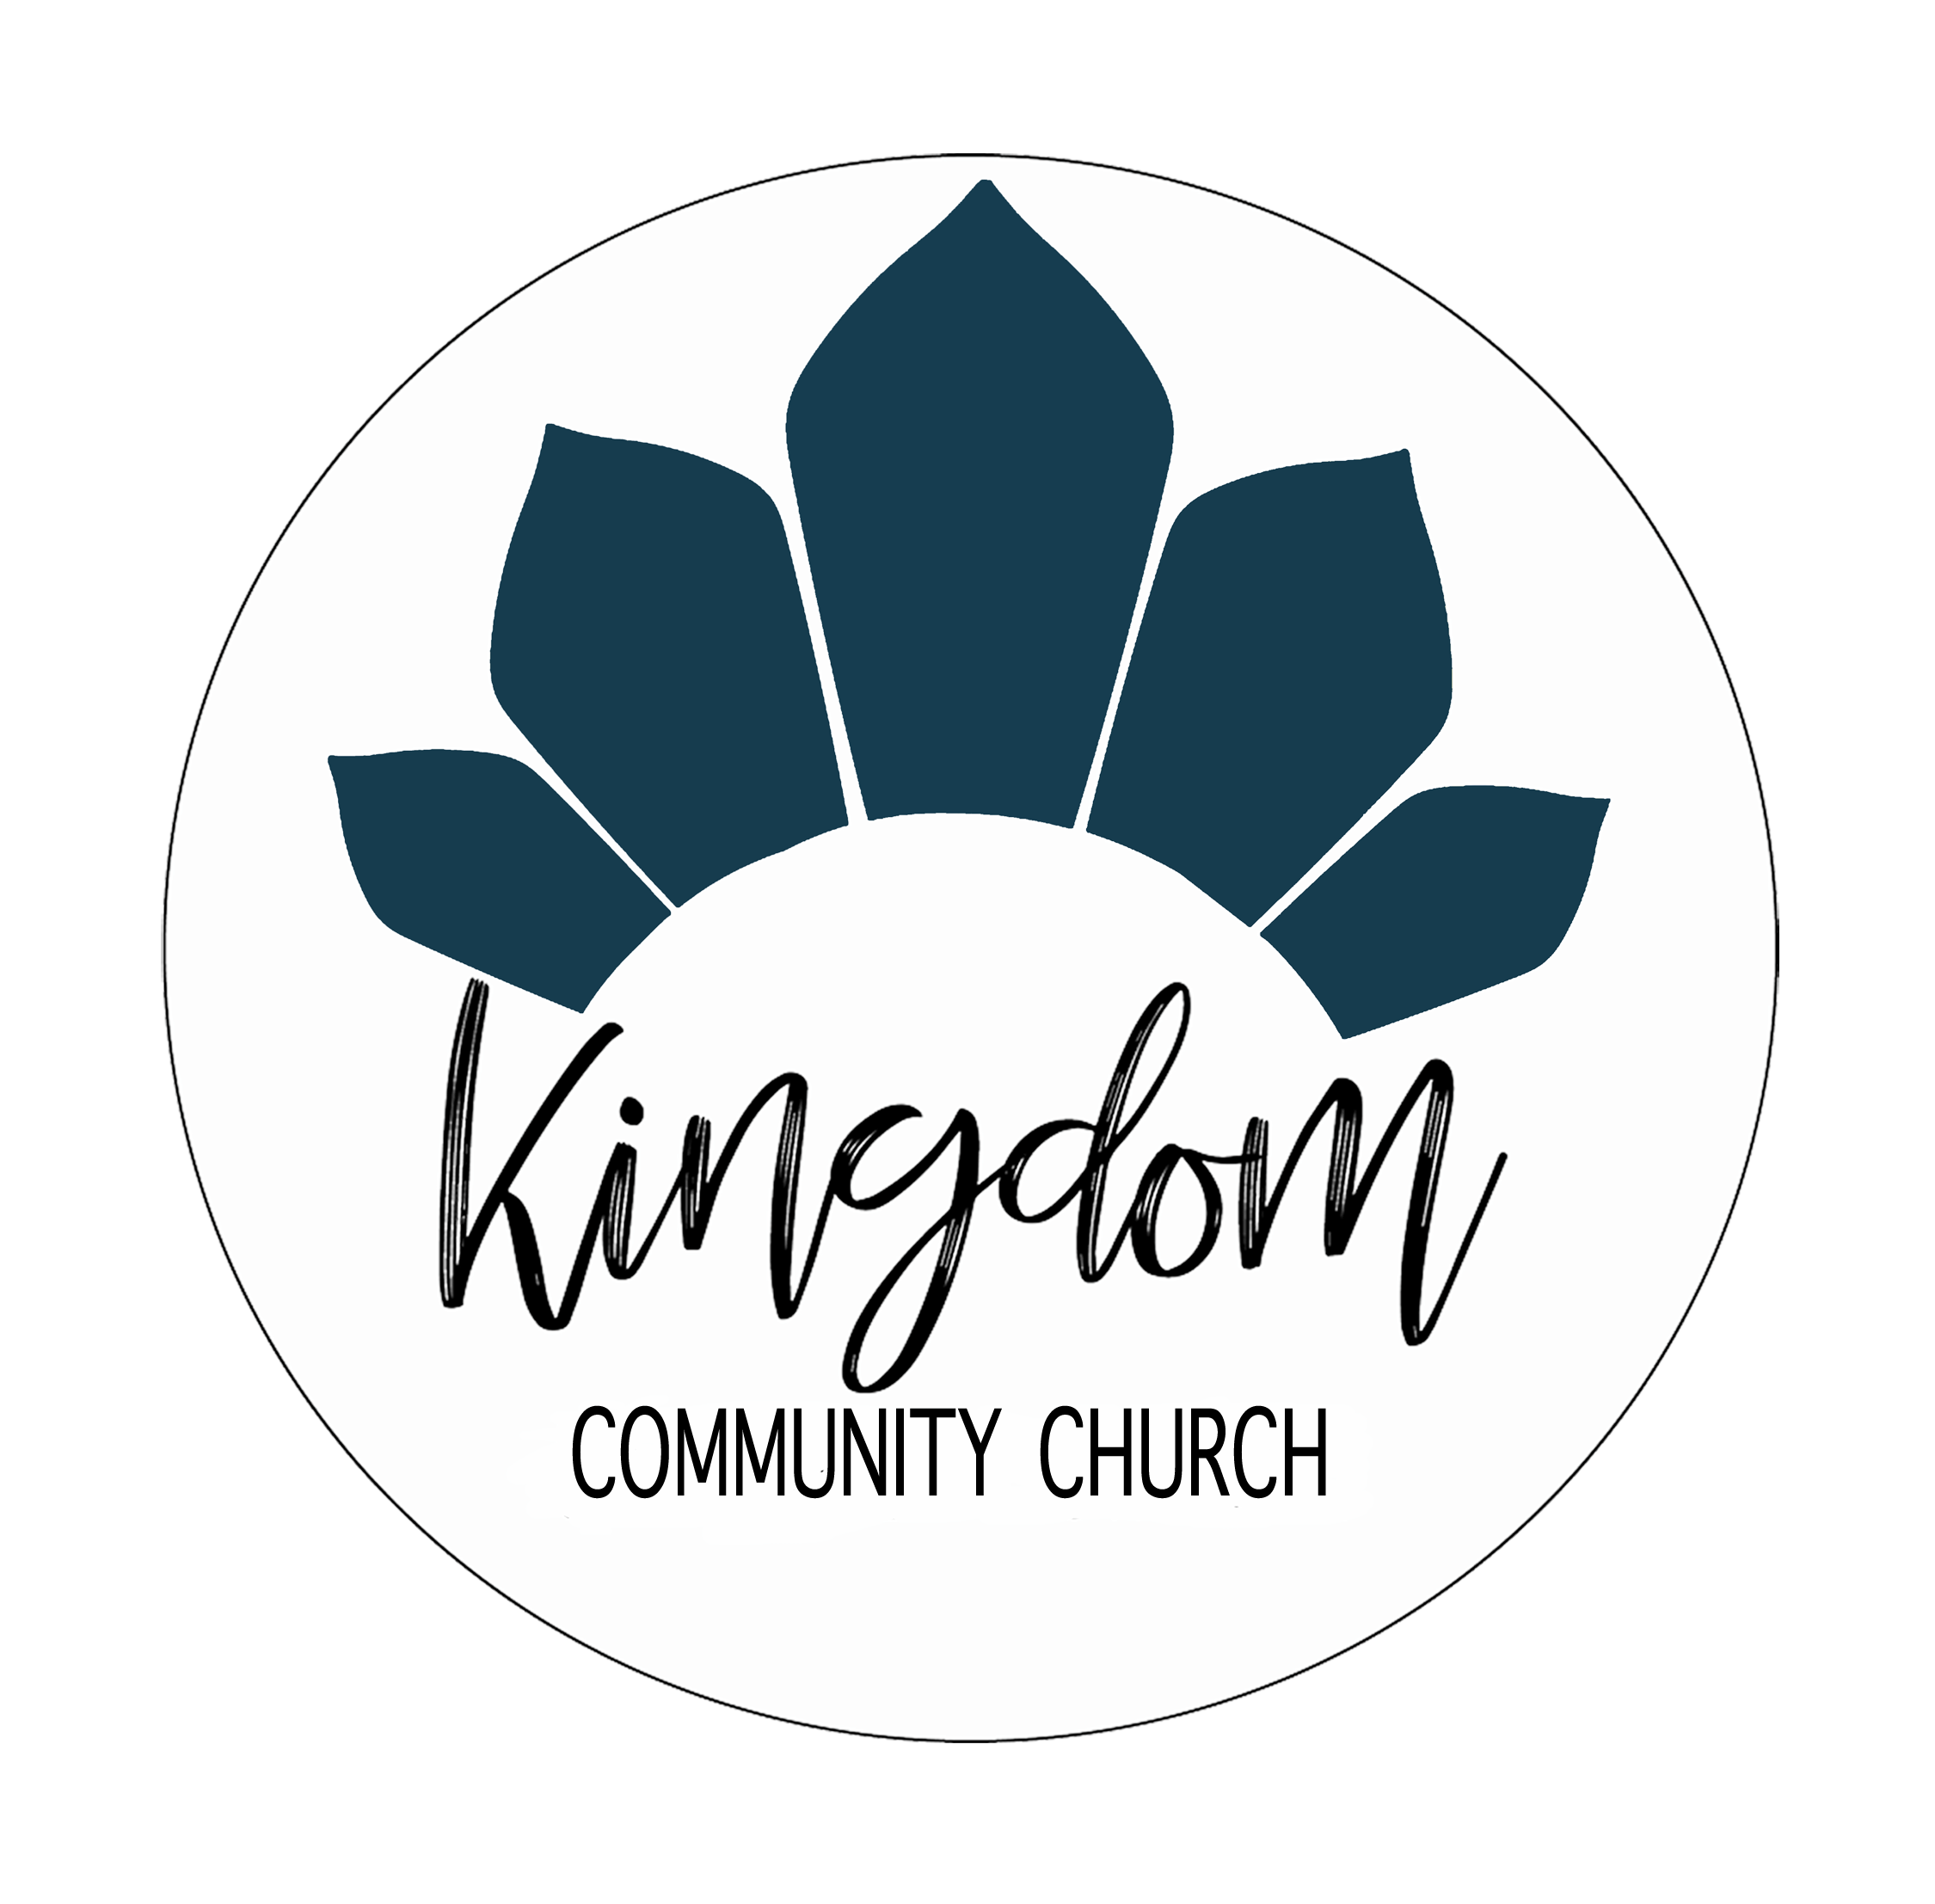 Kingdom Community Church